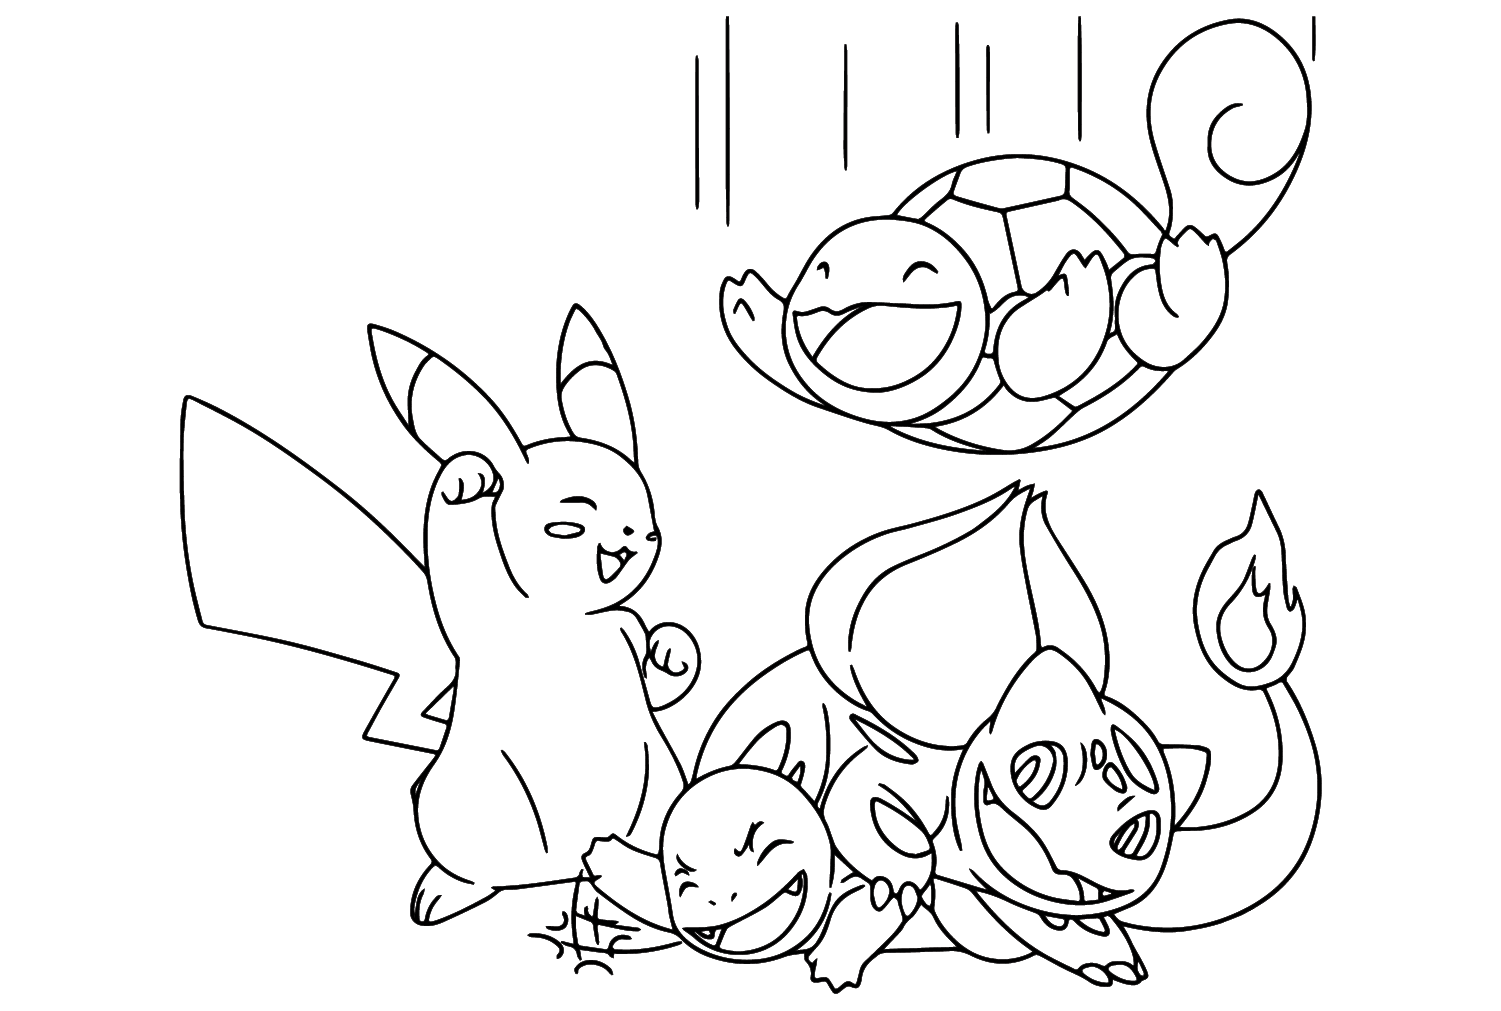 Pikachu y Squirtle, Charmander, Bulbasaur Página para colorear de Charmander